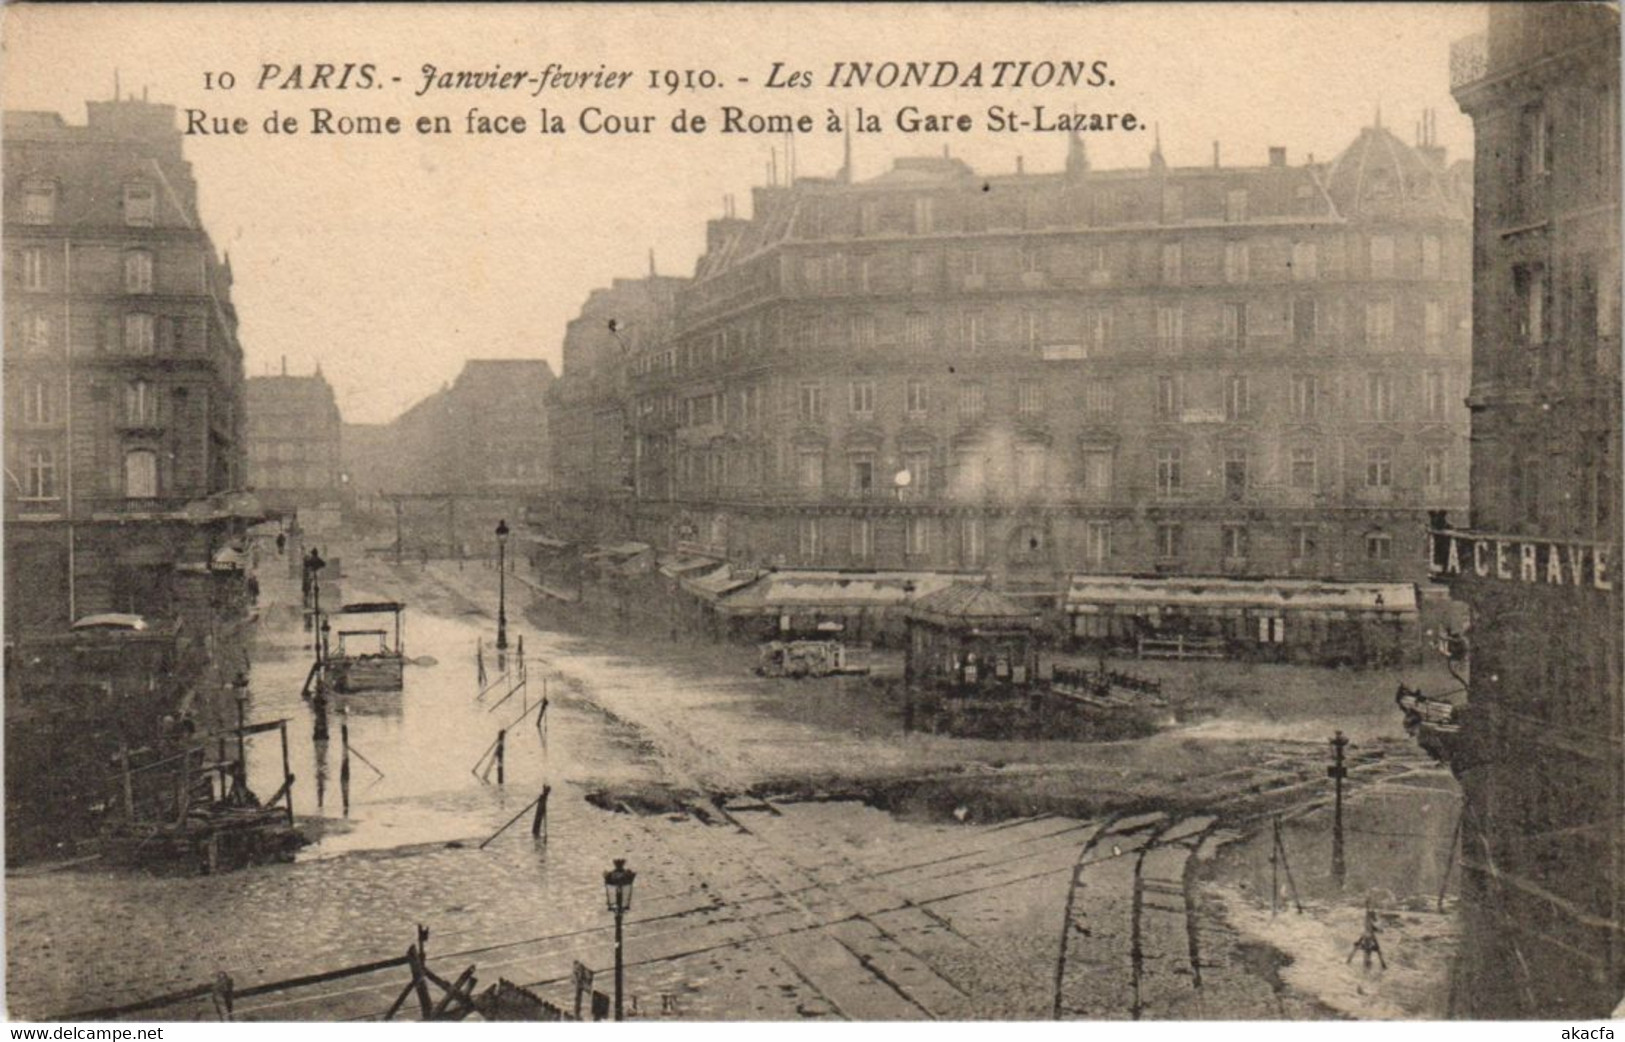 CPA Inondations 1910 PARIS Rue de Rome Cour de Rome (996375)